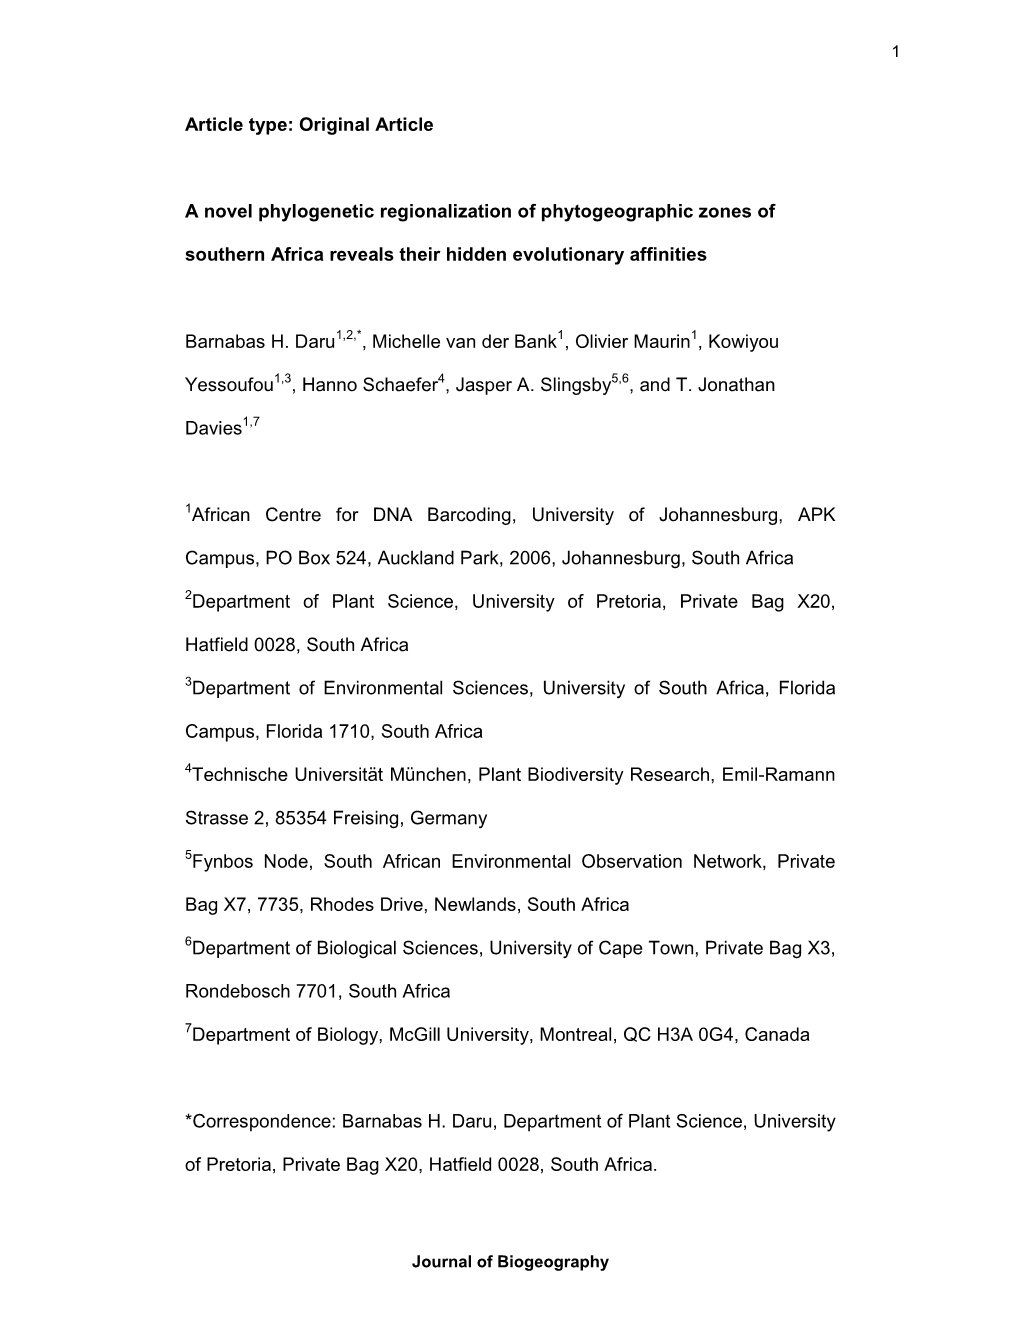 Original Article a Novel Phylogenetic Regionalization of Phytogeographic